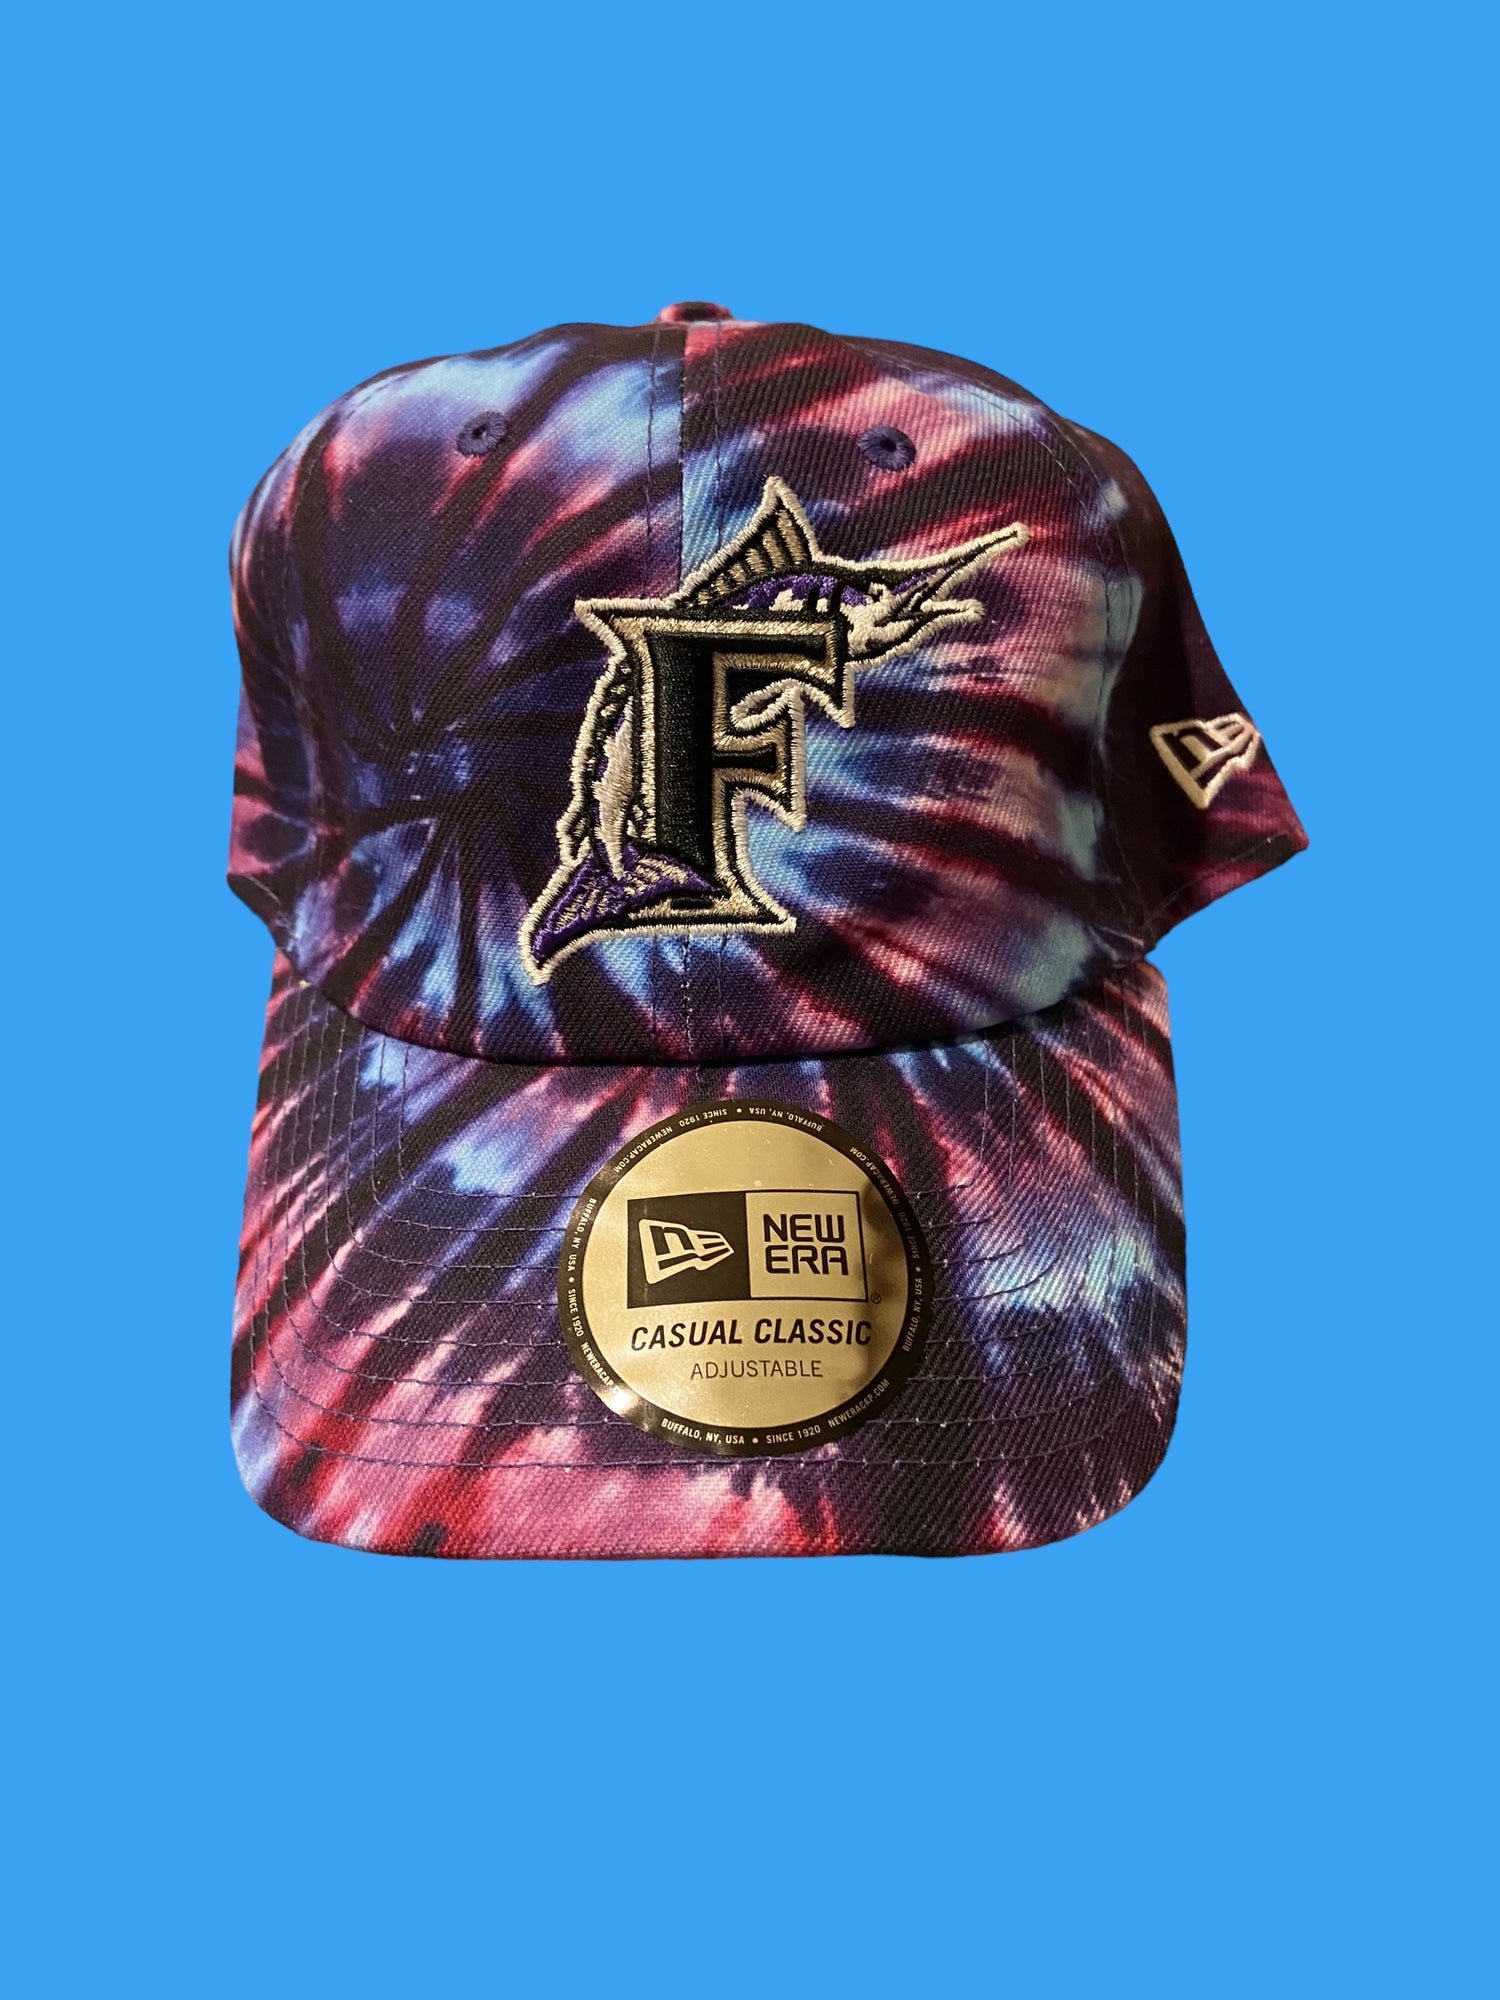 MLB Florida Marlins Casual Classic Retro Logo New Era Hat * NEW